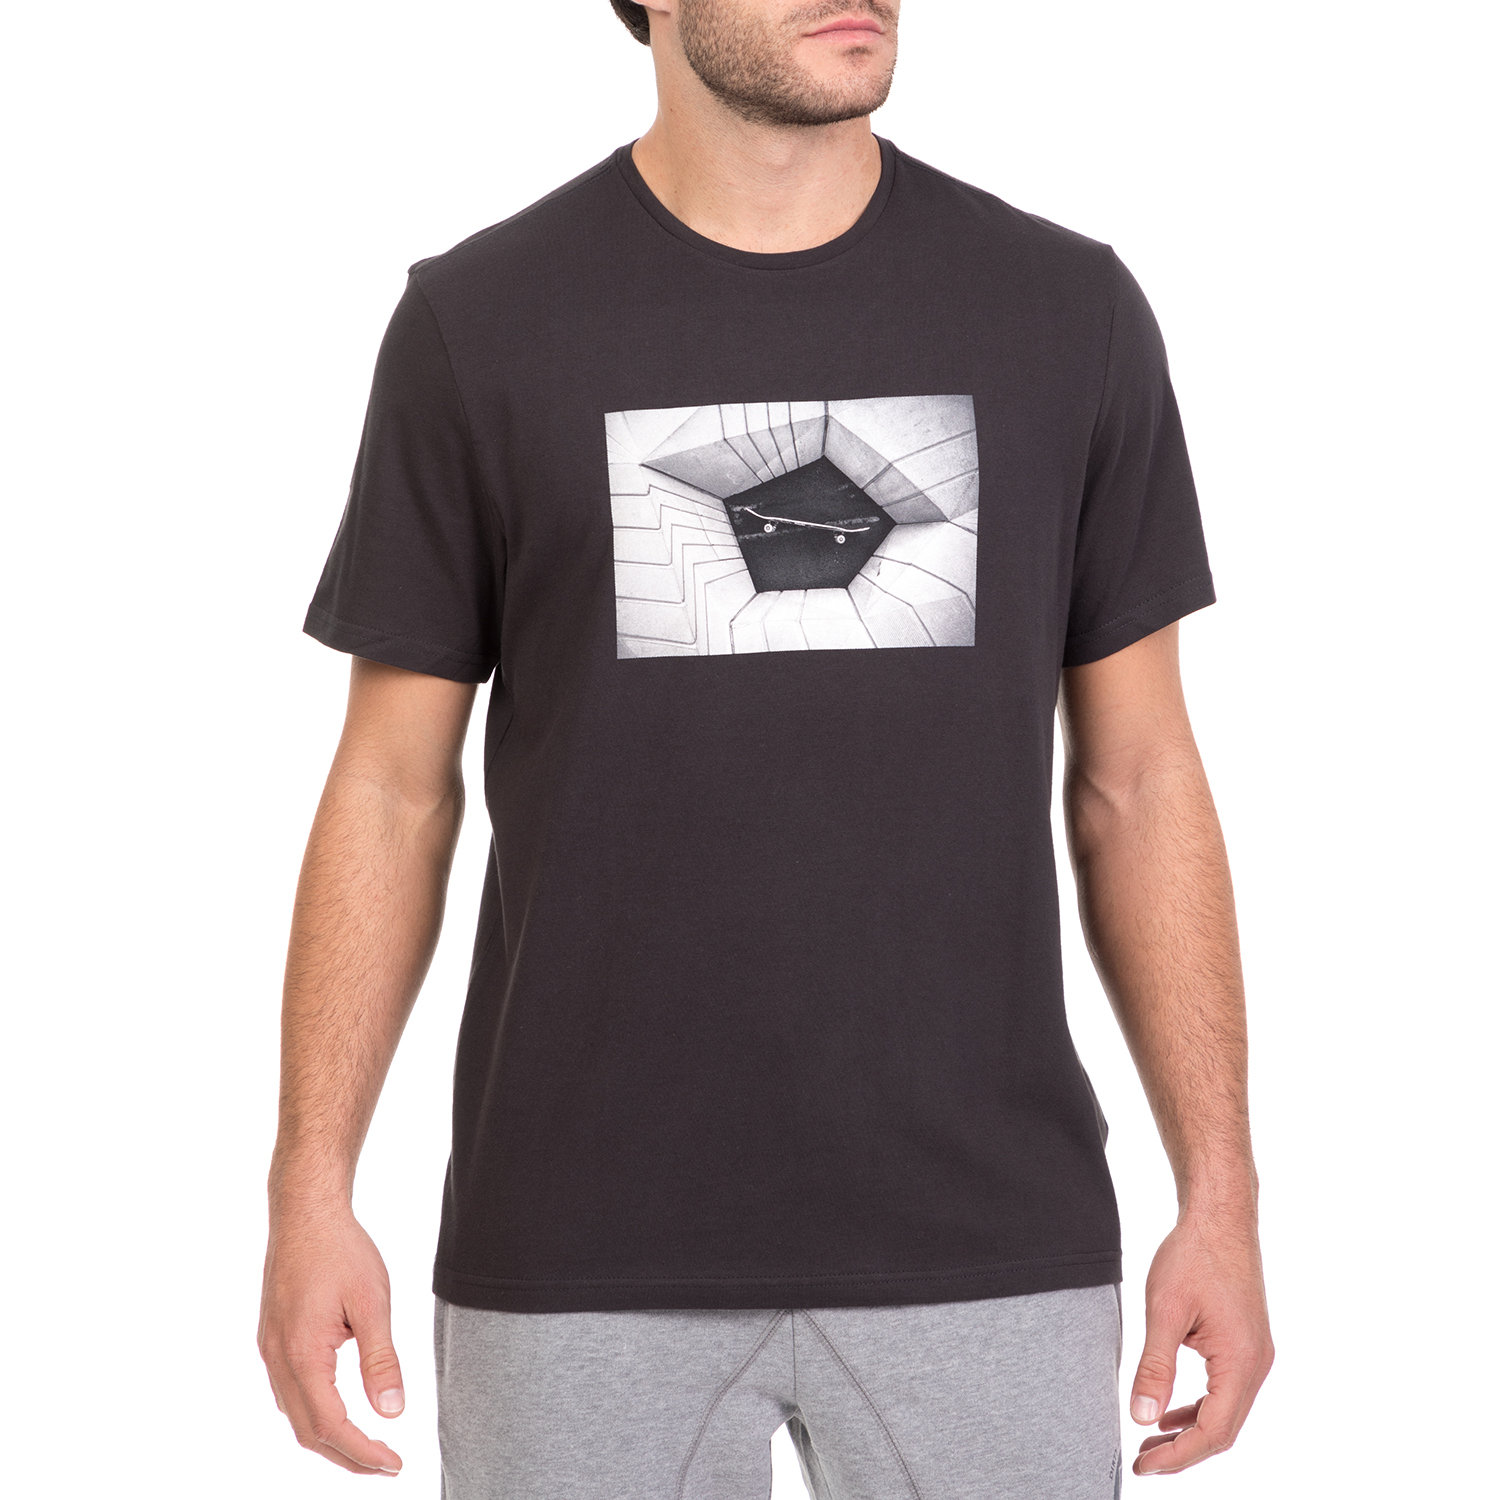 Ανδρικά/Ρούχα/Μπλούζες/Κοντομάνικες ELEMENT - Ανδρική κοντομάνικη μπλούζα ELEMENT μαύρη με στάμπα